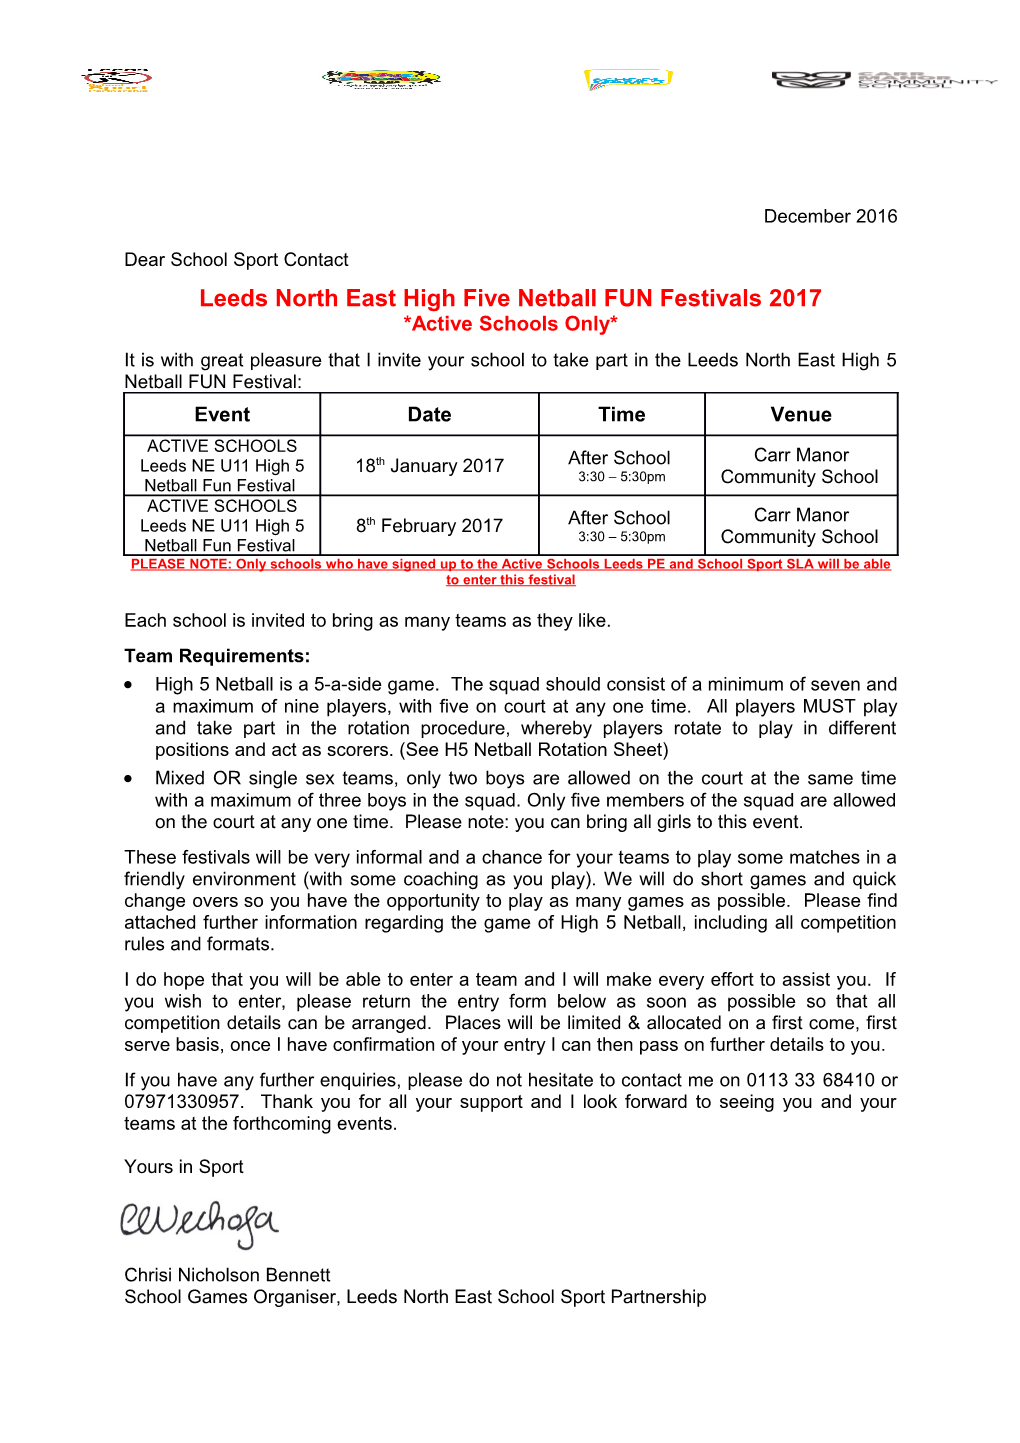 Leeds North East High Five Netball FUN Festivals 2017